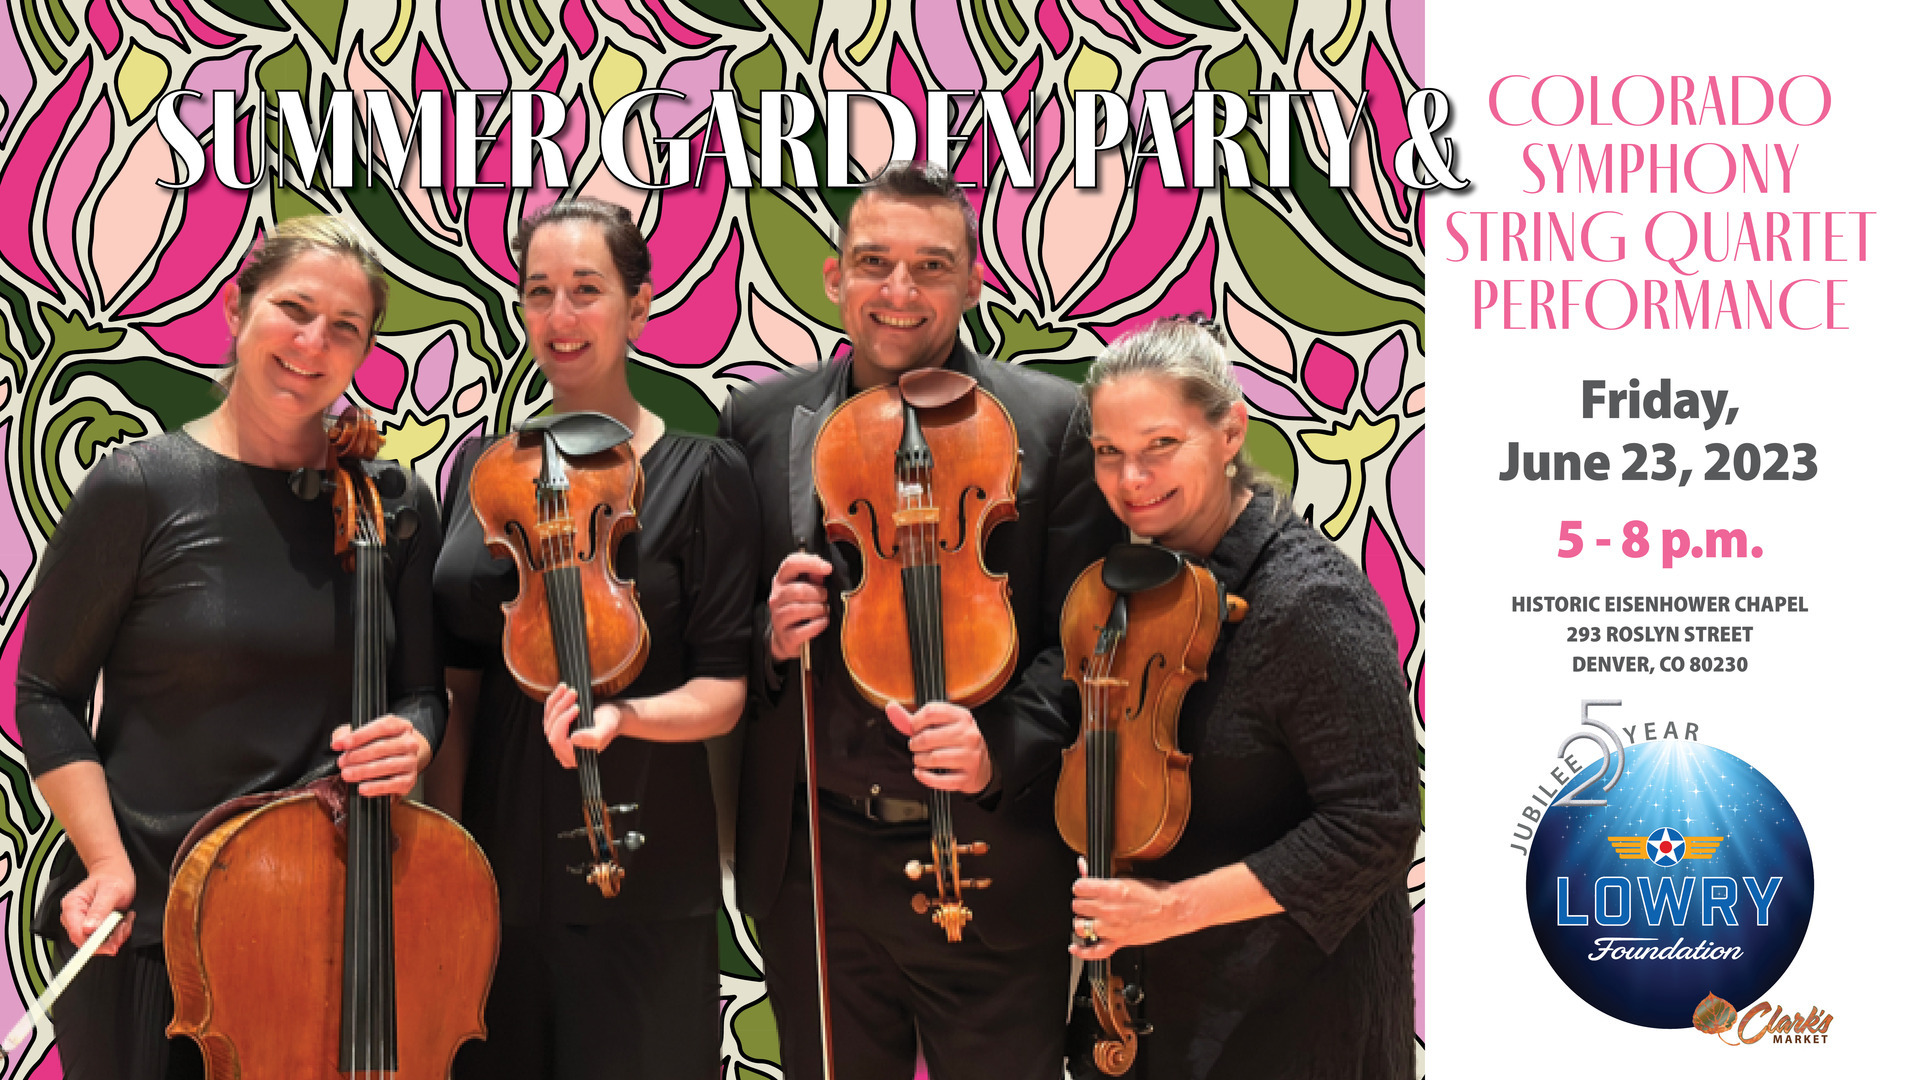 Lowry Garden Party and Colorado Symphony String Quartet Performance, Denver, Colorado, United States